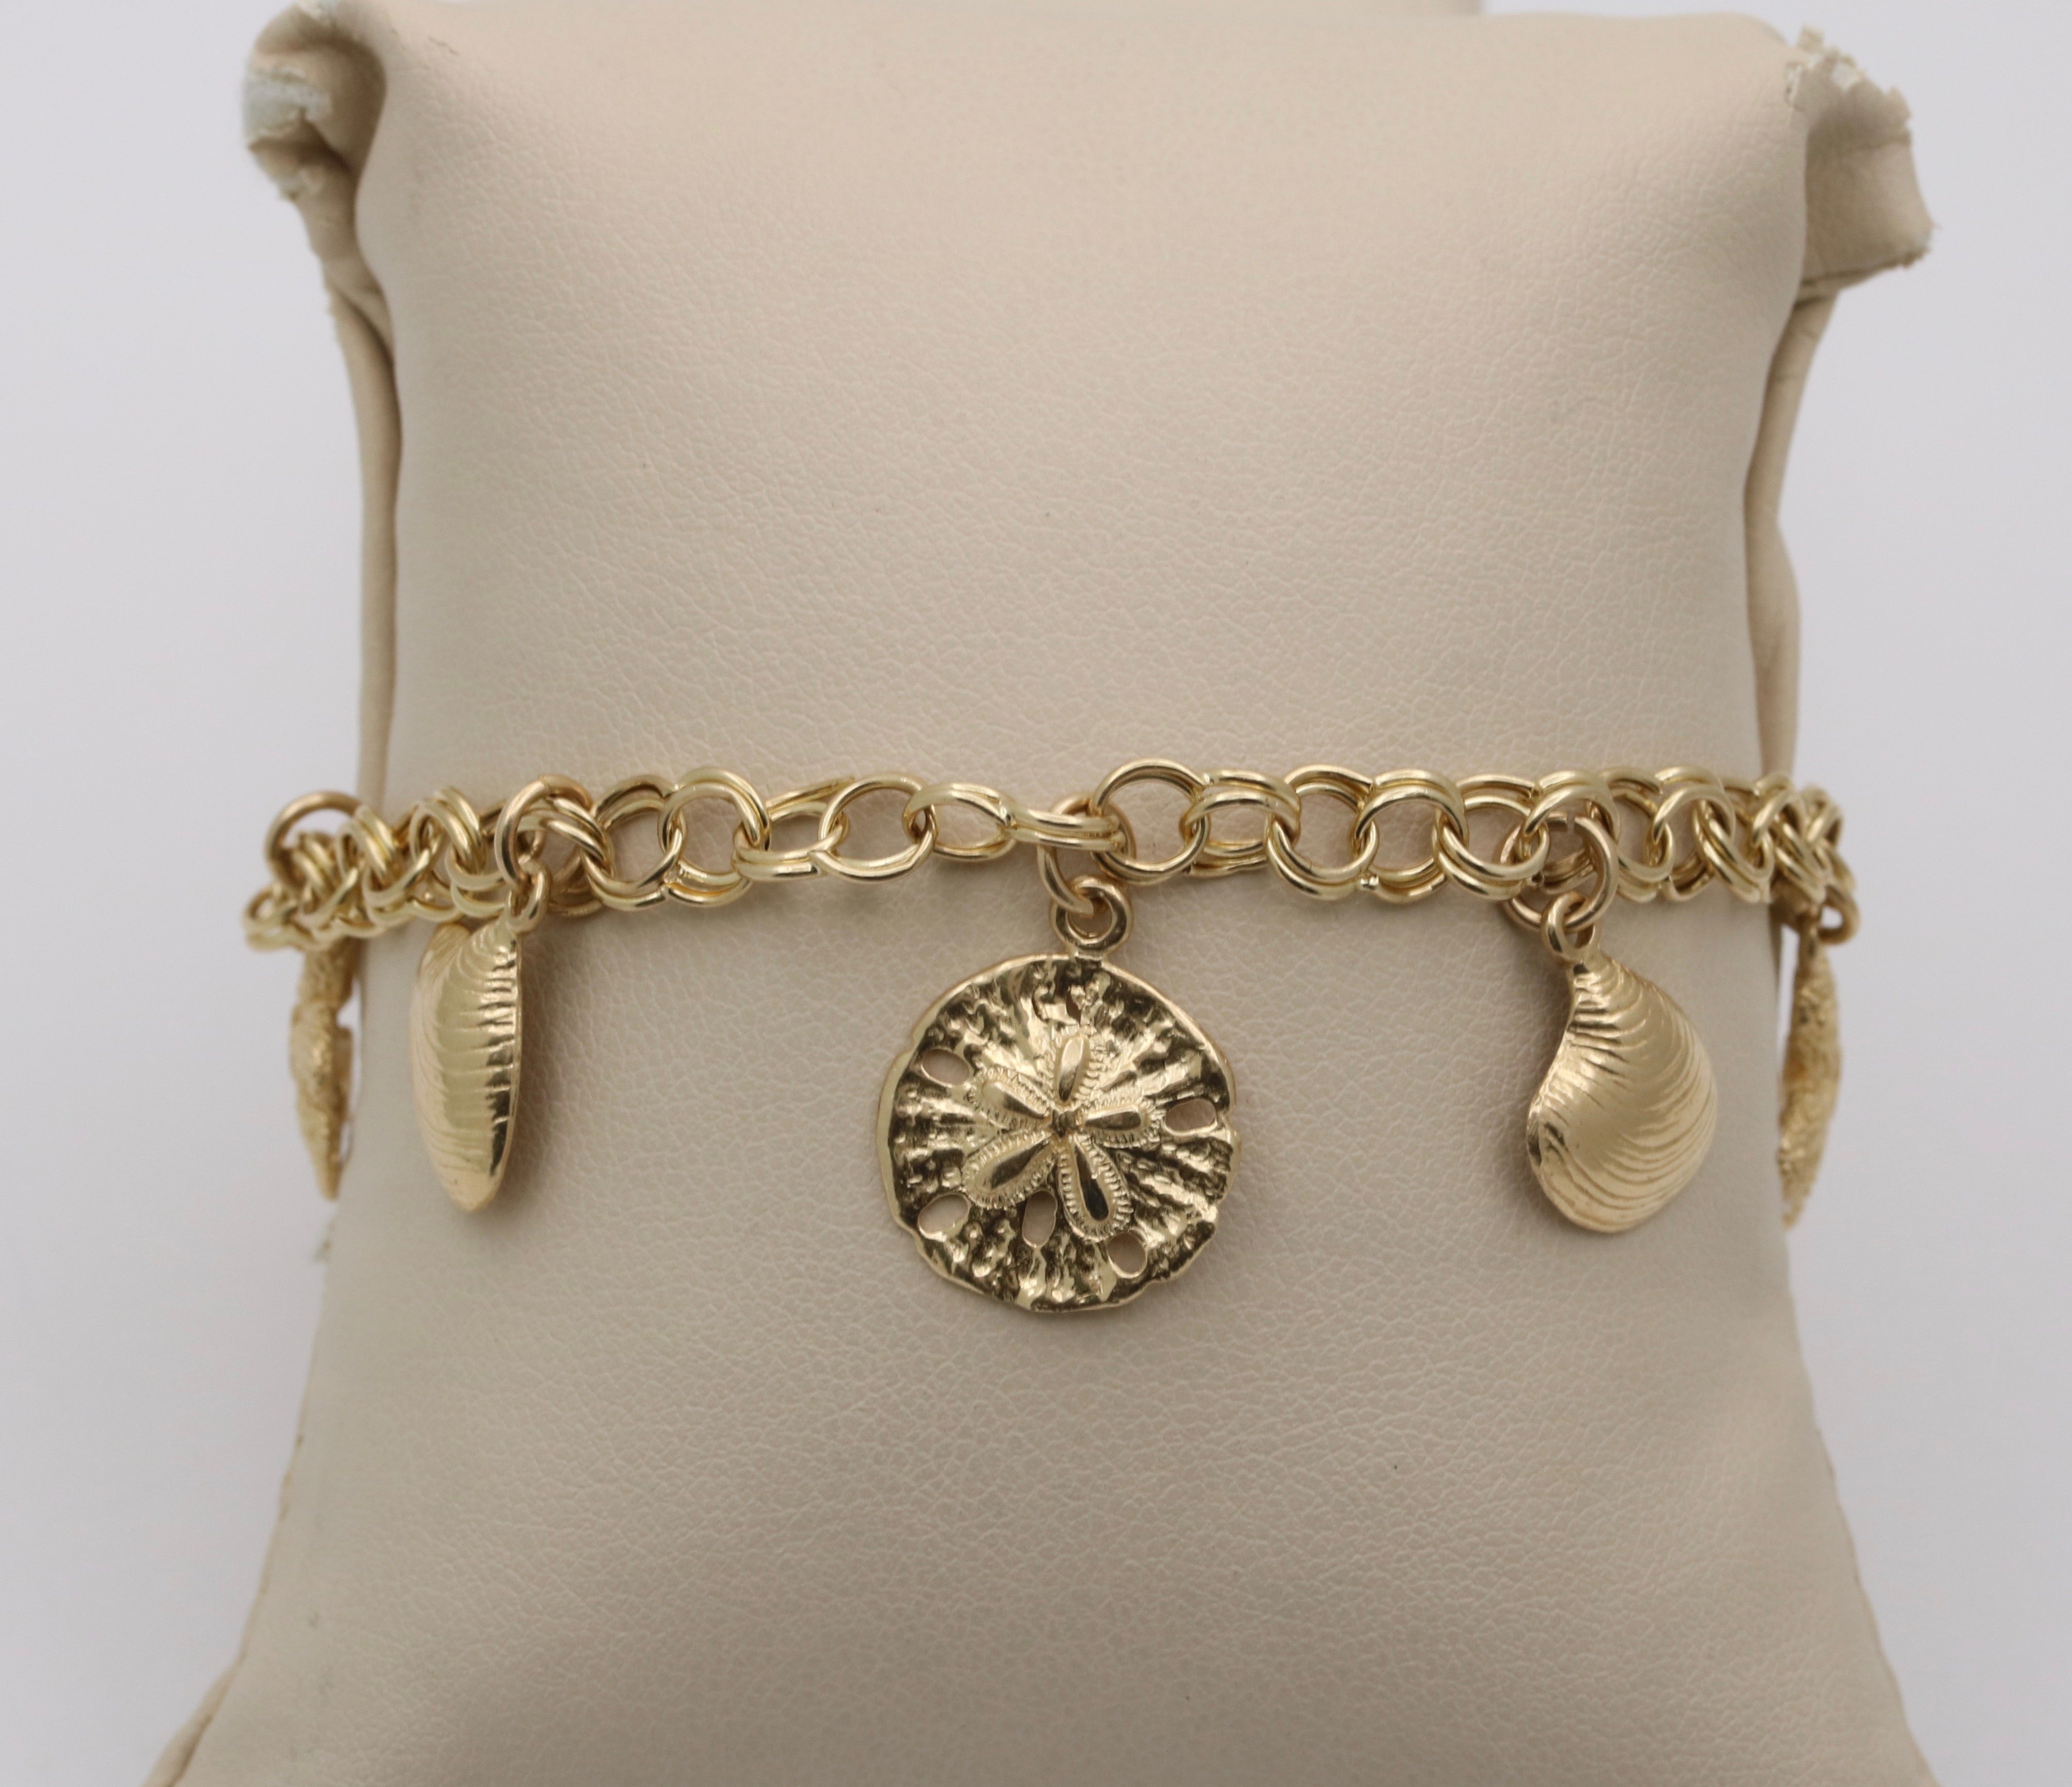 Anthropologie Luck Charm Bracelet | Jewelry bracelets gold, Gold jewelry  fashion, Vintage bracelets